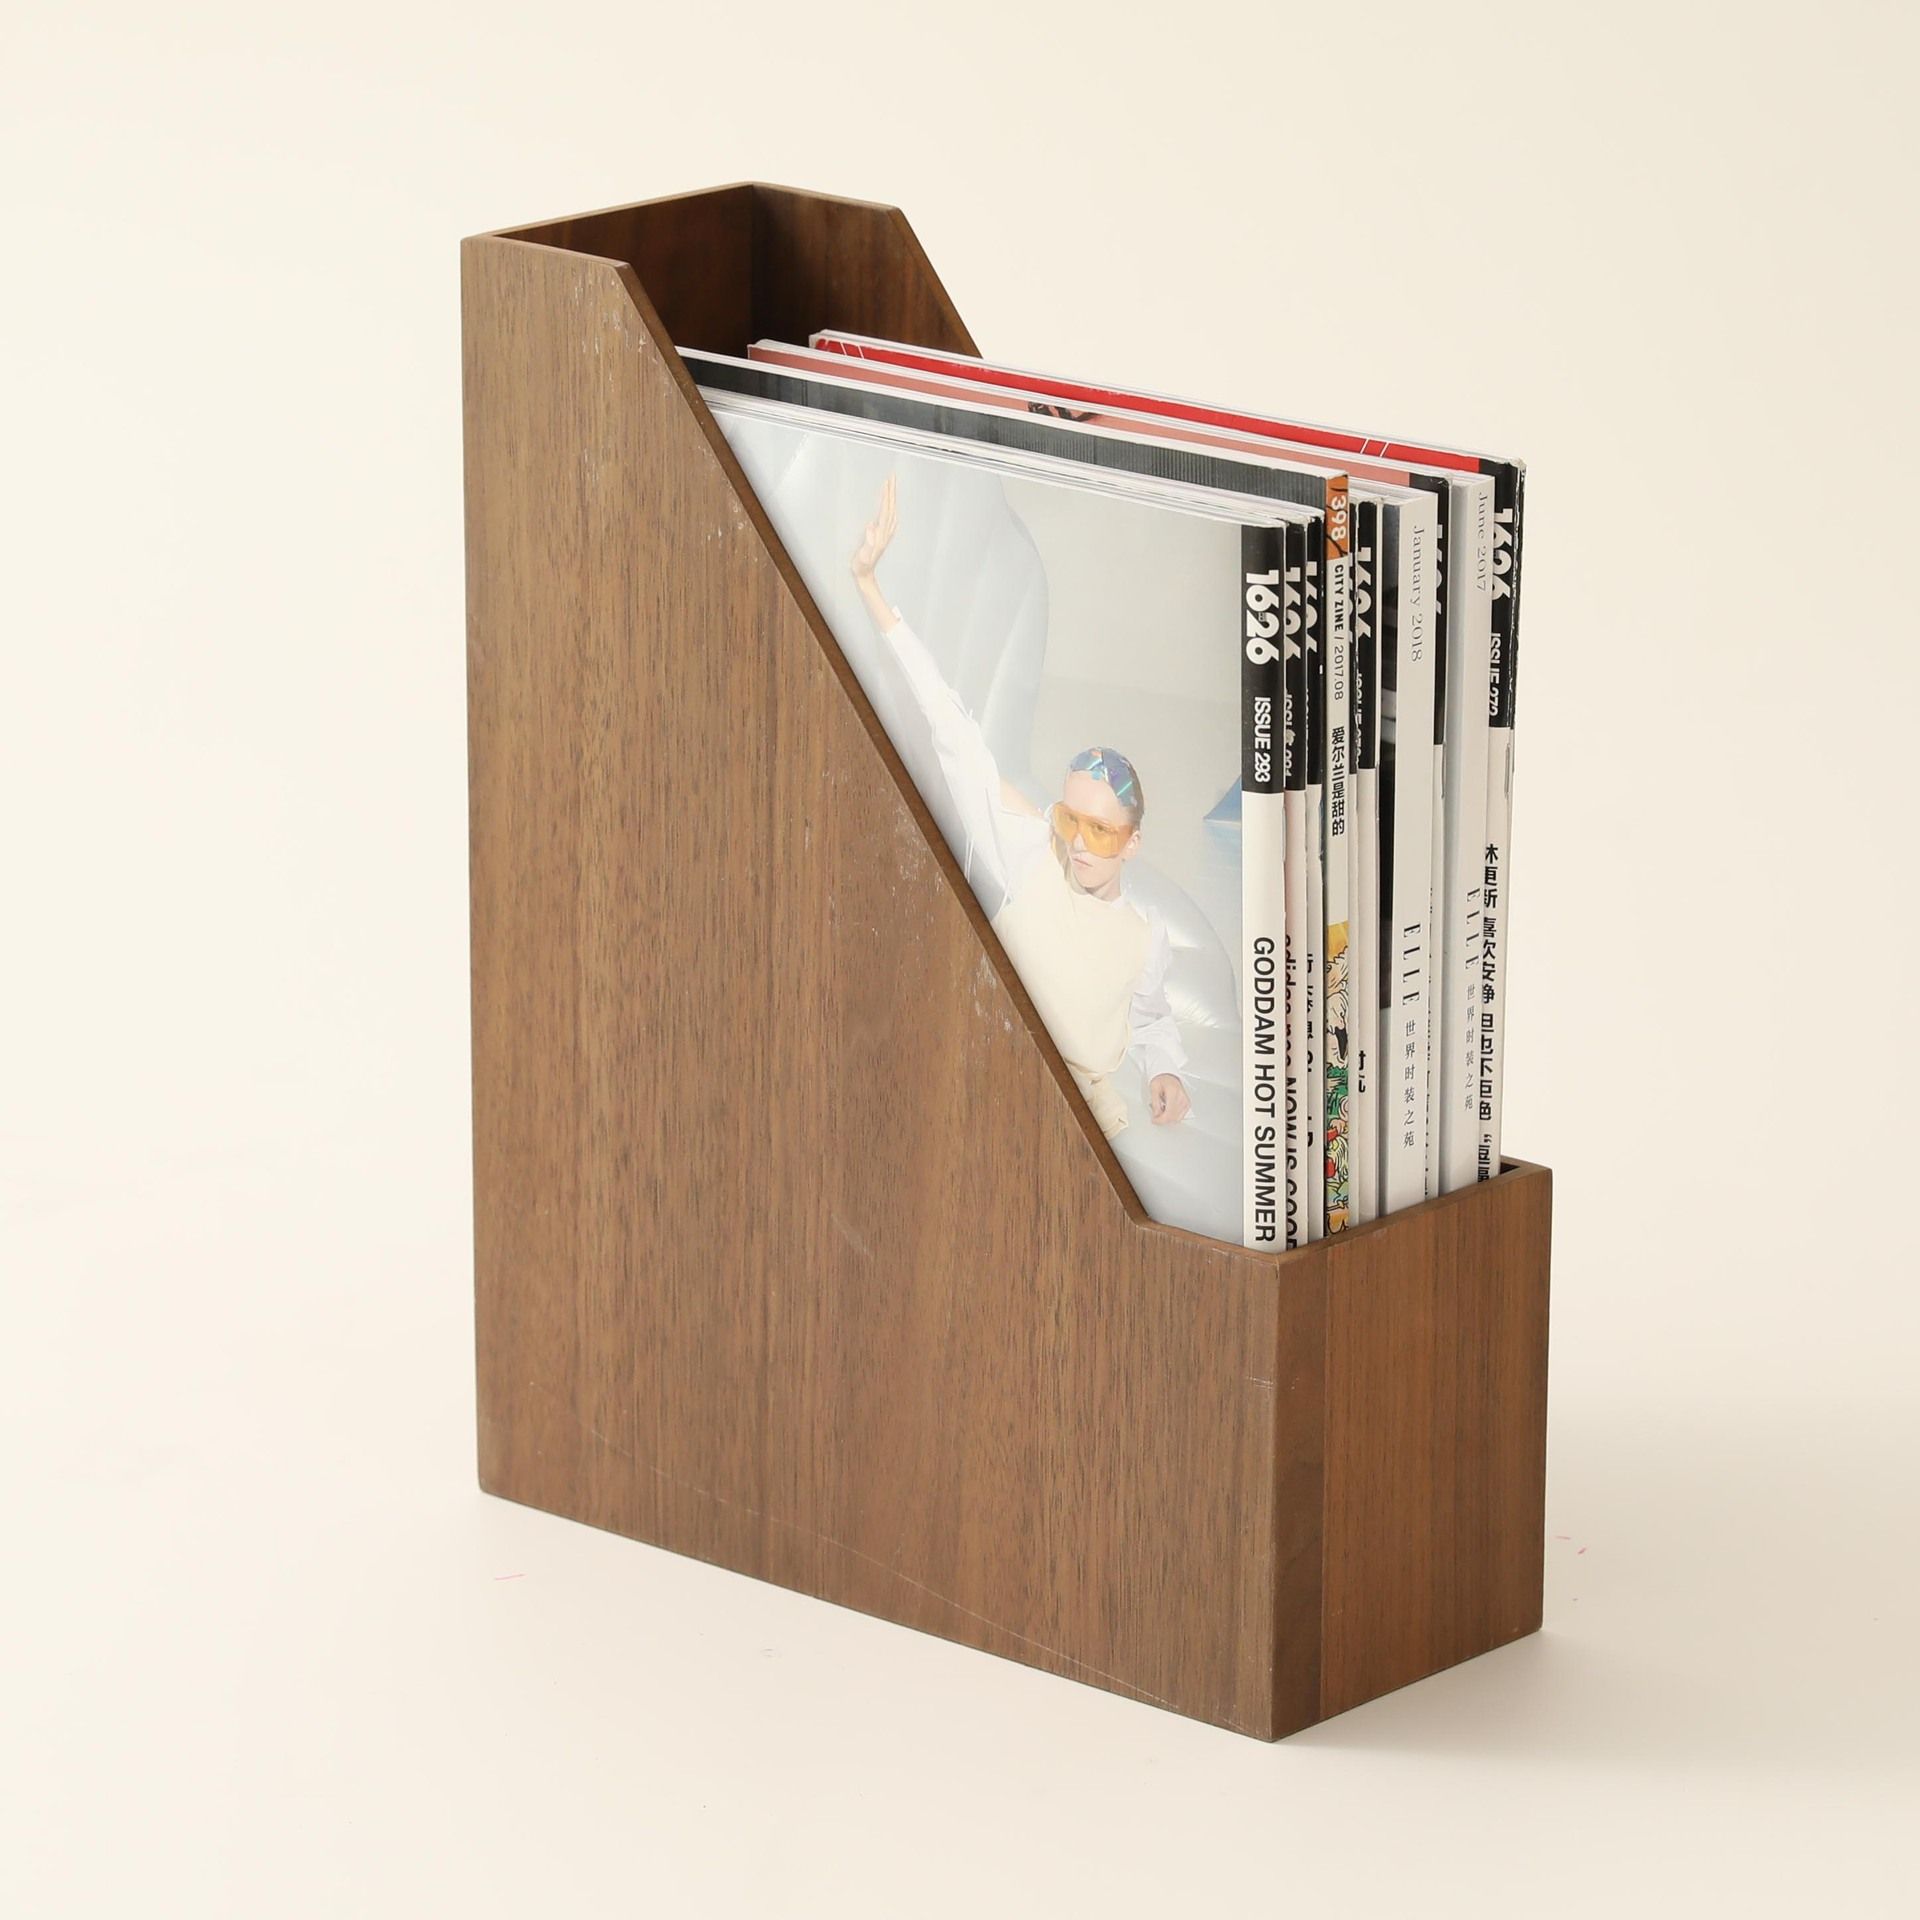 Fogun Walnut Wood Desktop Organizer Desktop Office Home Bookends Book Ends Stand Holder Shelf